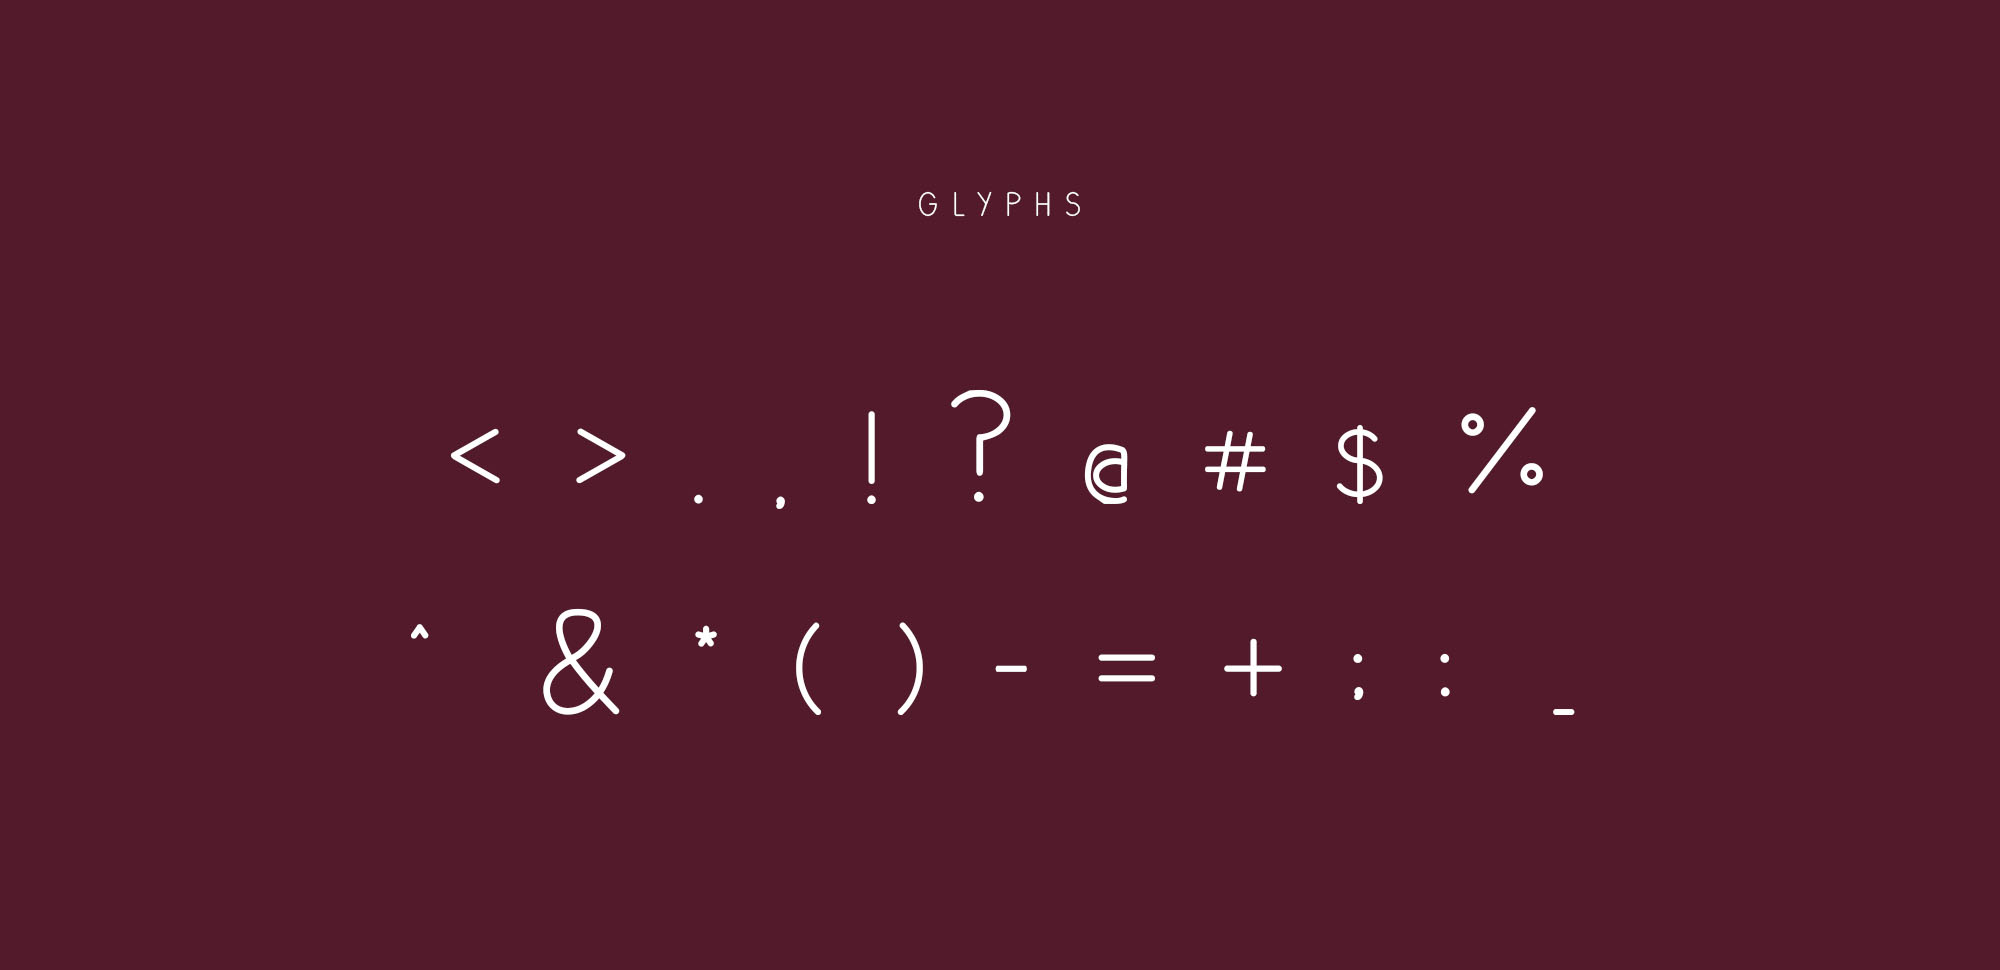 正楷可爱英文手写字体 Plum Fun Typeface插图(3)